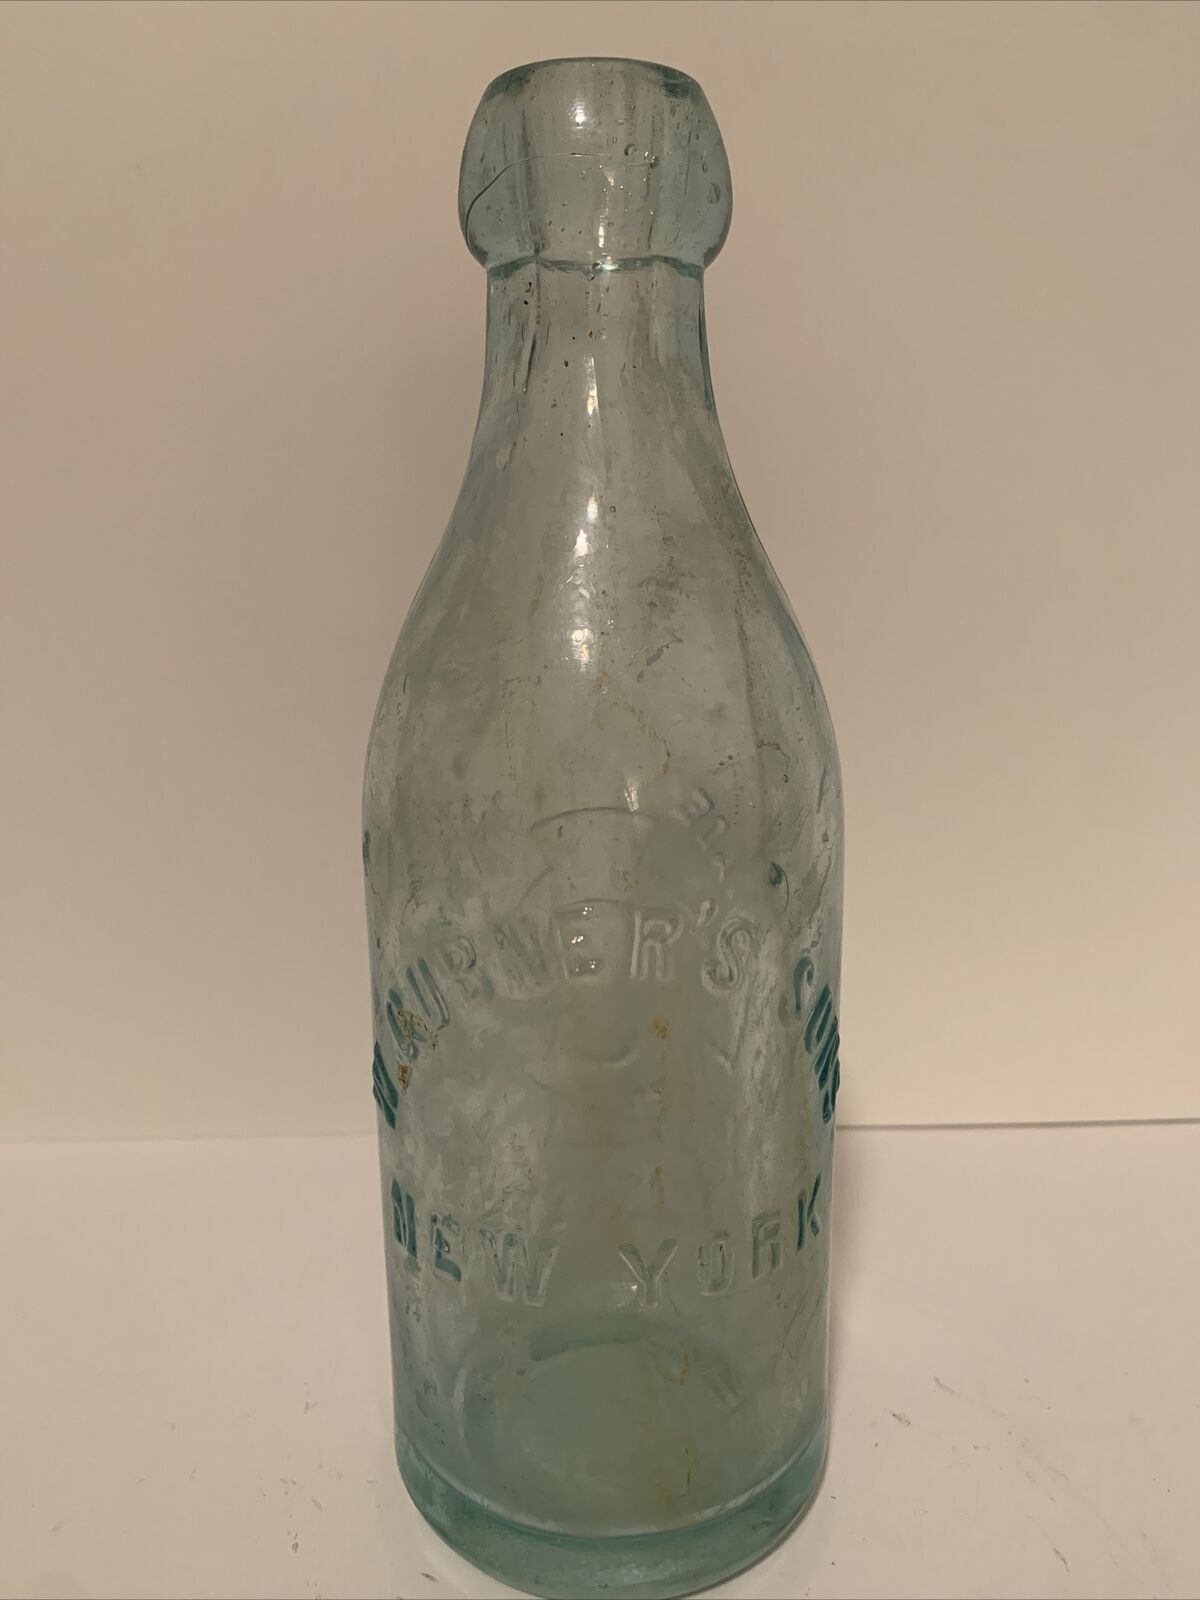 W. Gubner’s Sons Antique Blob Top Bottle 1889 New York - Rare